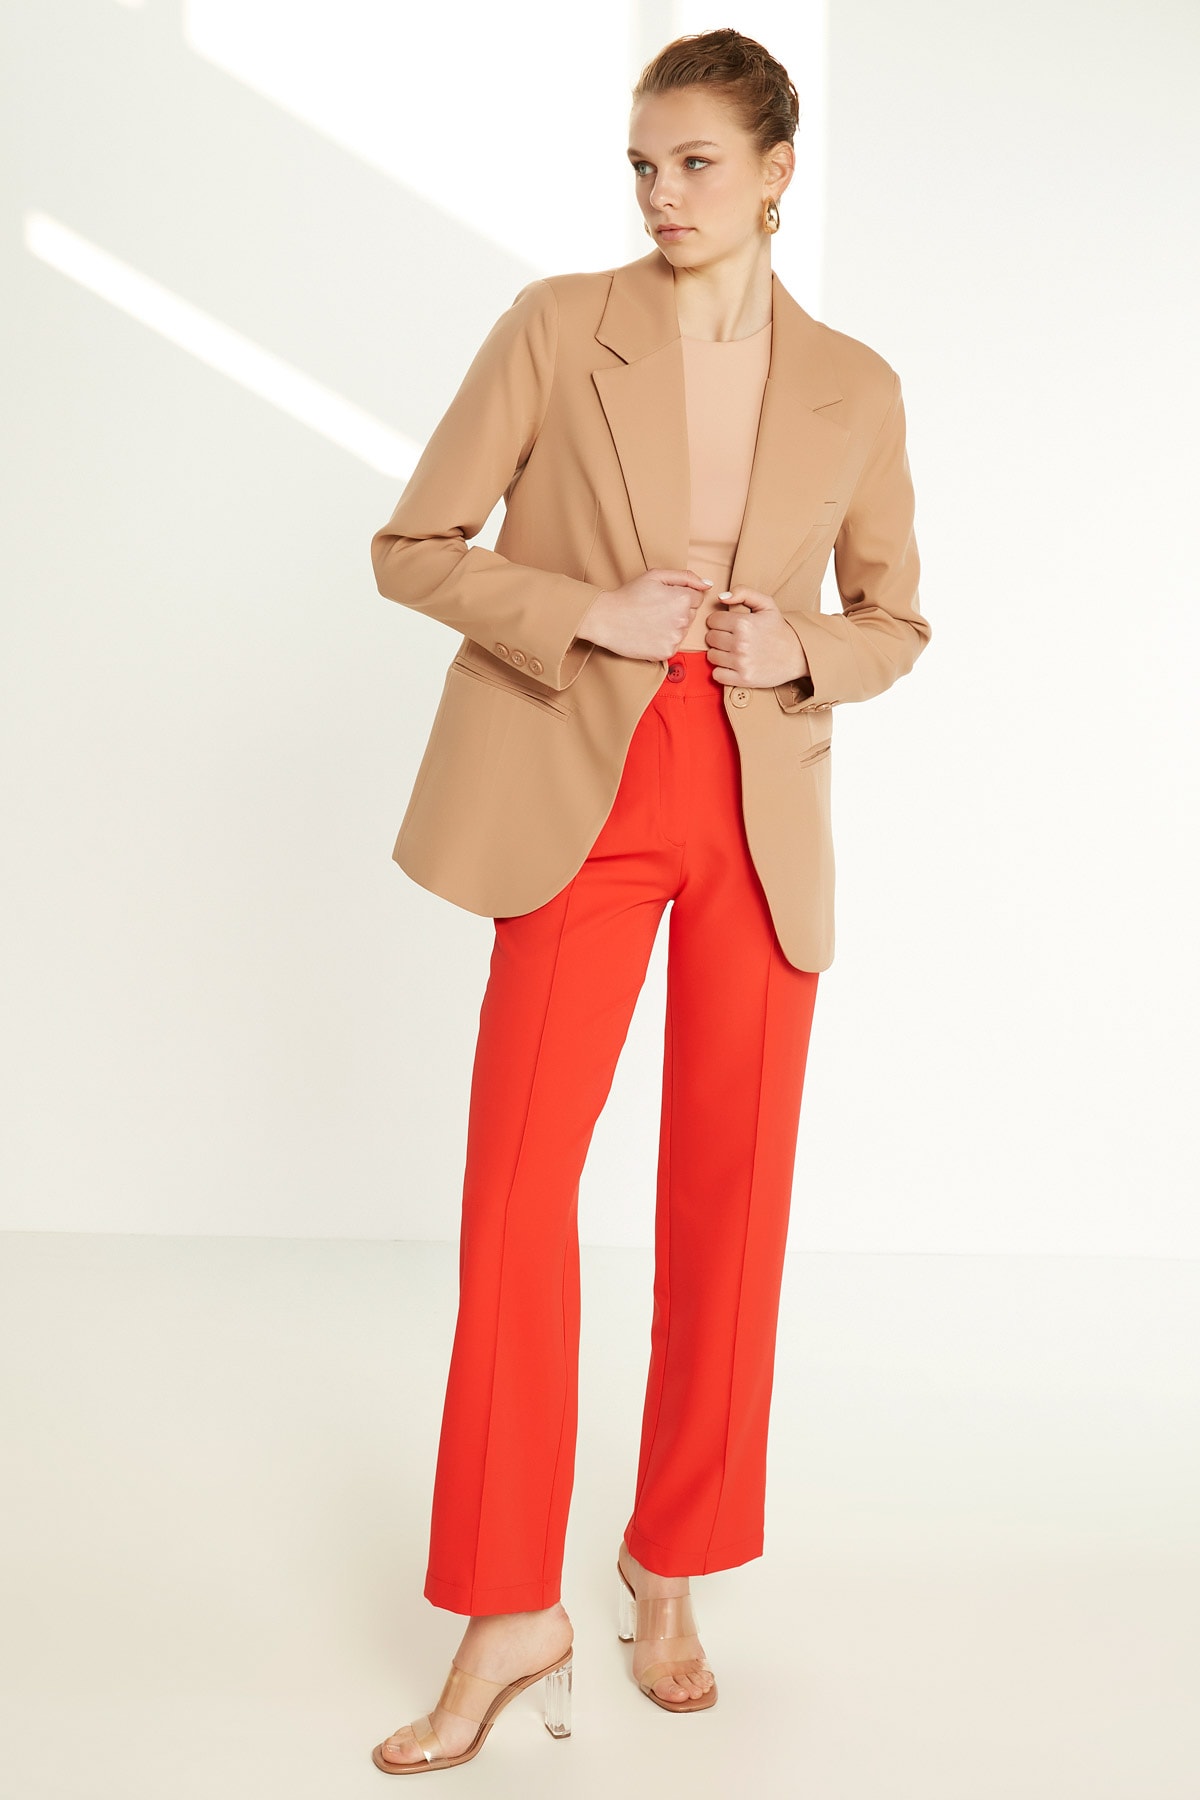 Пиджак на одной пуговице спереди Vitrin, коричневый однотонный пиджак на одной пуговице dkny цвет light fatique